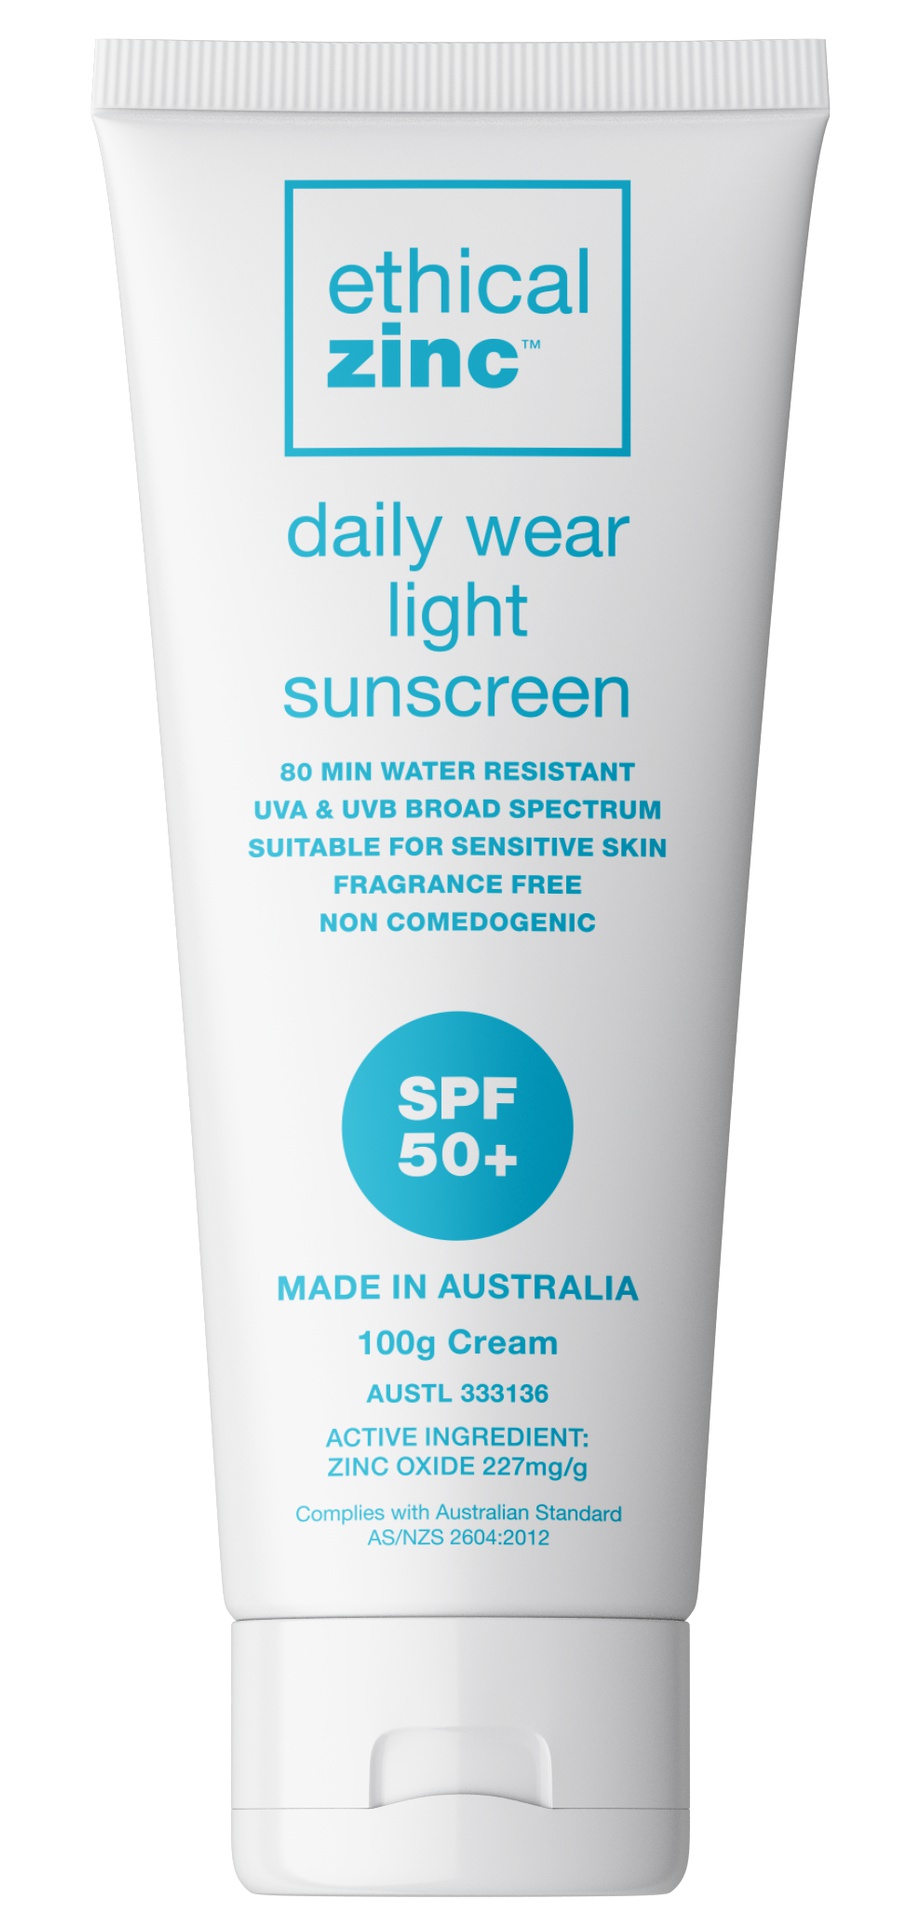 Ethical Zinc Daily Wear Light Sunscreen Spf 50